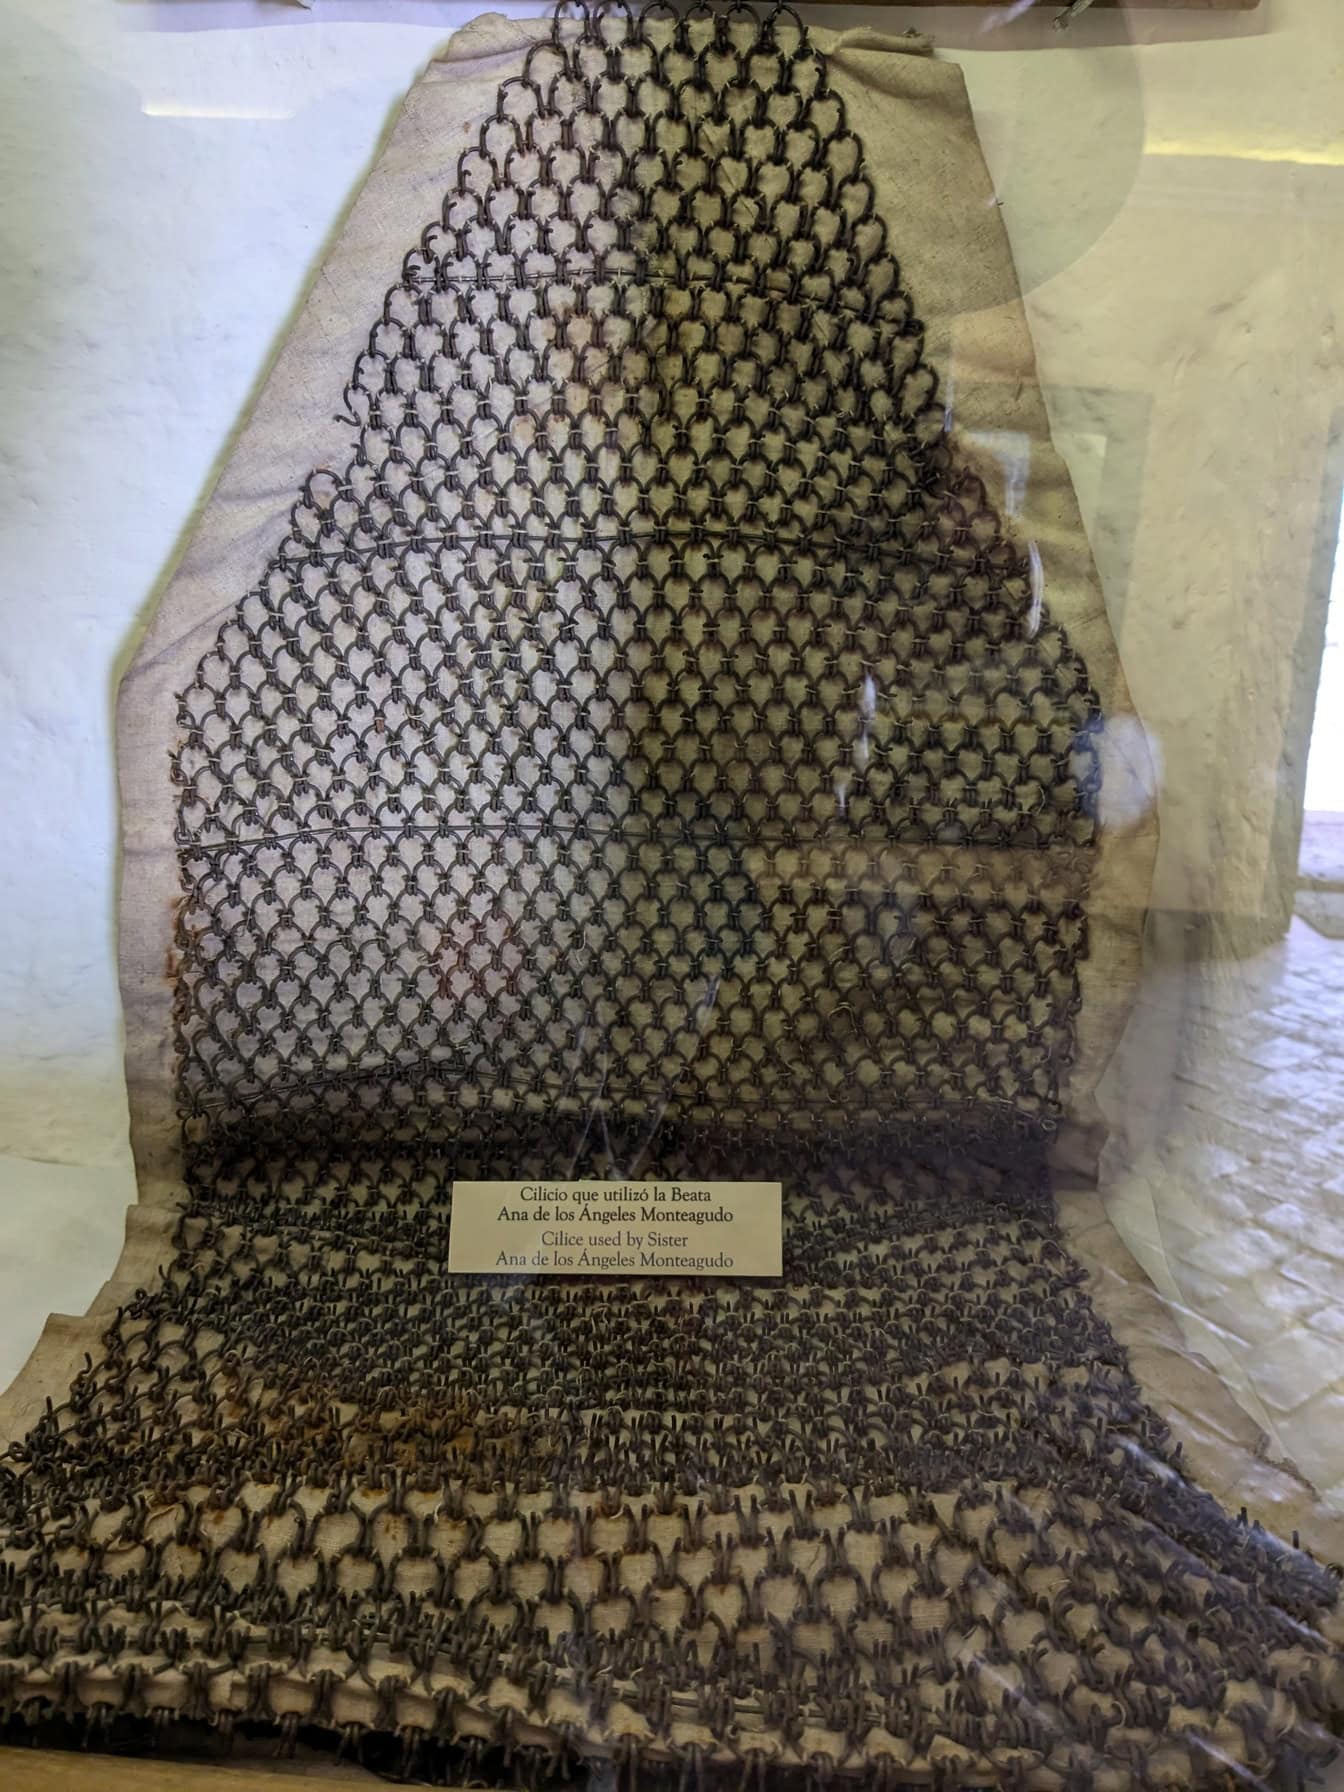 Oděv vyrobený z řetězů, který používala sestra Ana de los Angelos Monteagudo, vystaven v muzeu v Peru